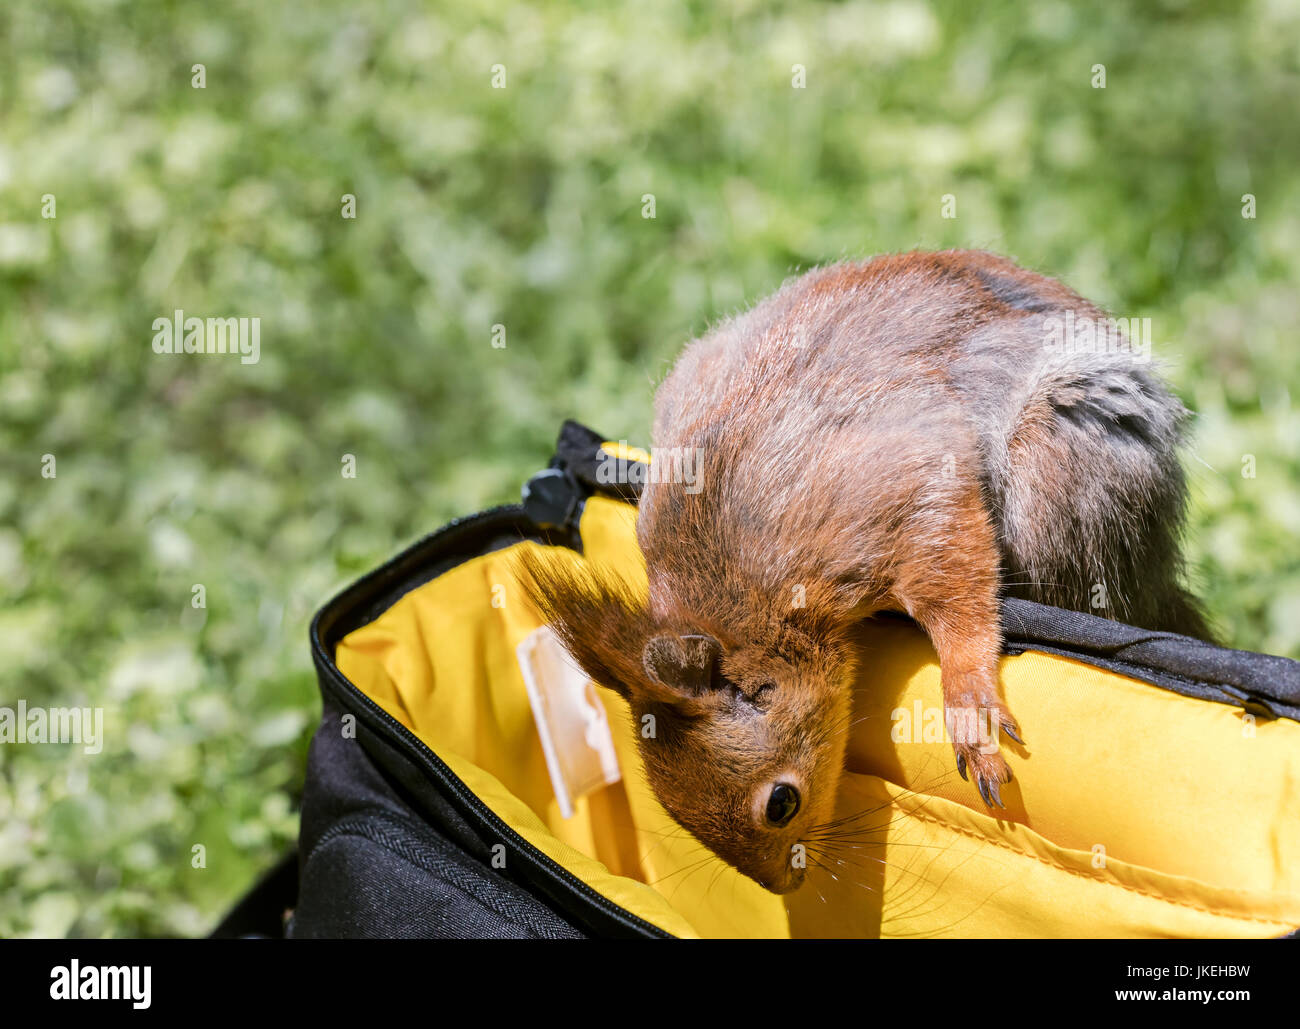 Drôle à l'écureuil roux en sac photo à la recherche de nourriture dans la région de city park Banque D'Images